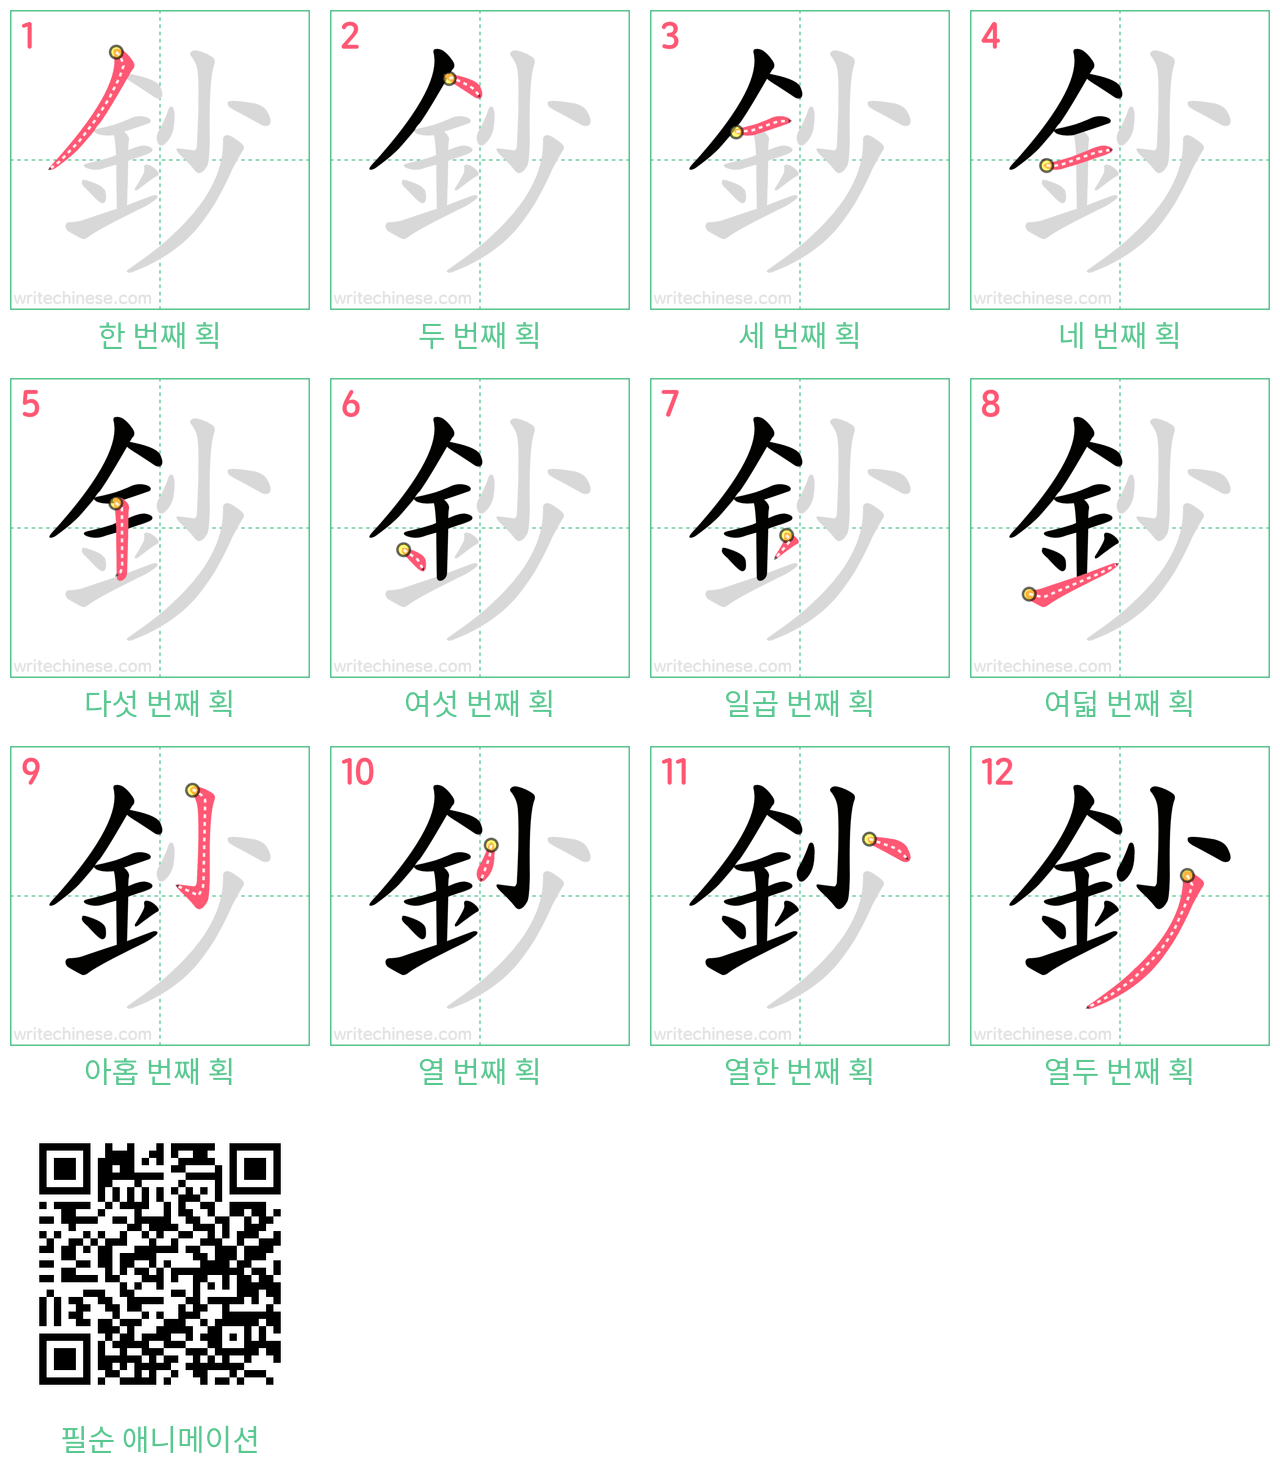 鈔 step-by-step stroke order diagrams